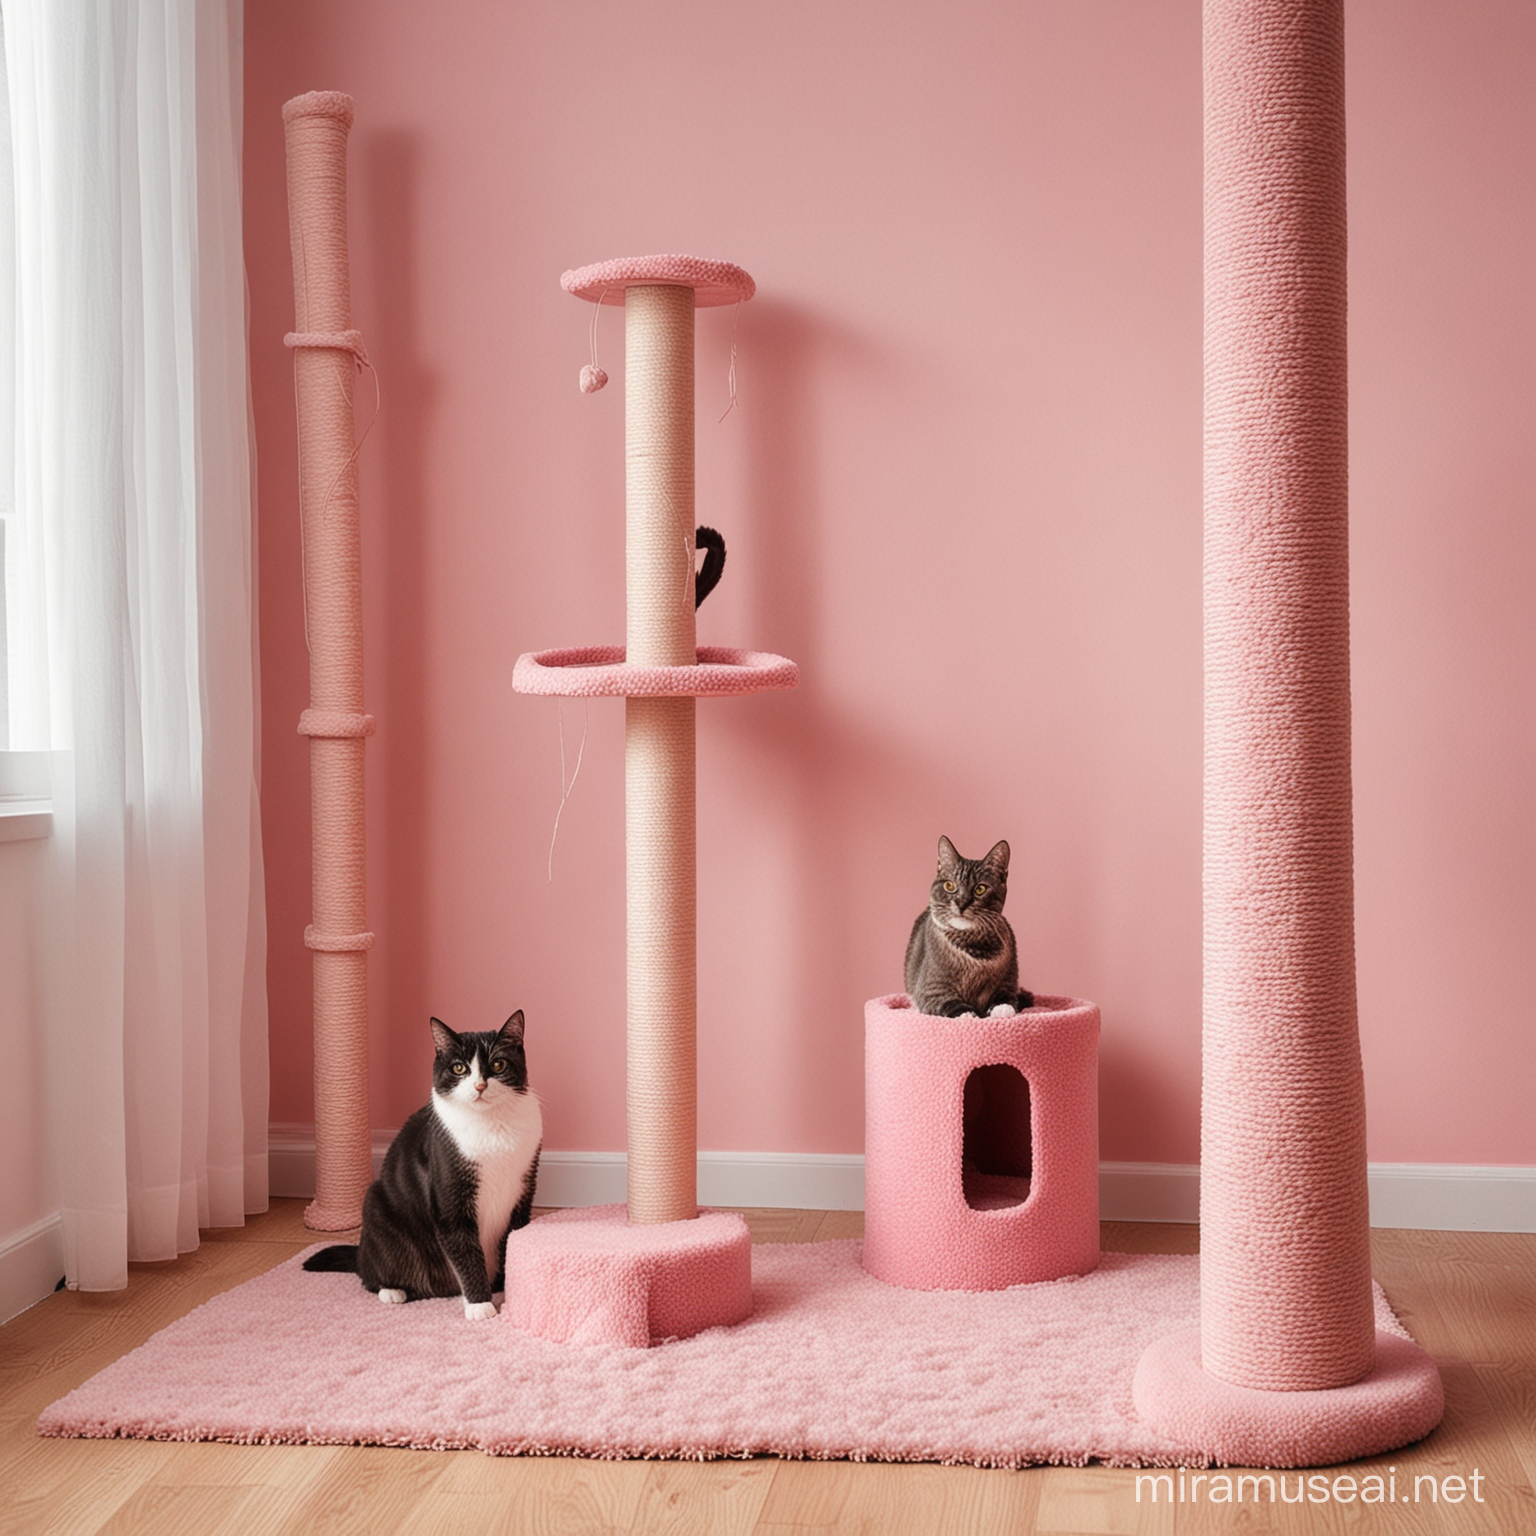 Кошка сидит рядом с когтеточкой в комнате в розовых оттенках